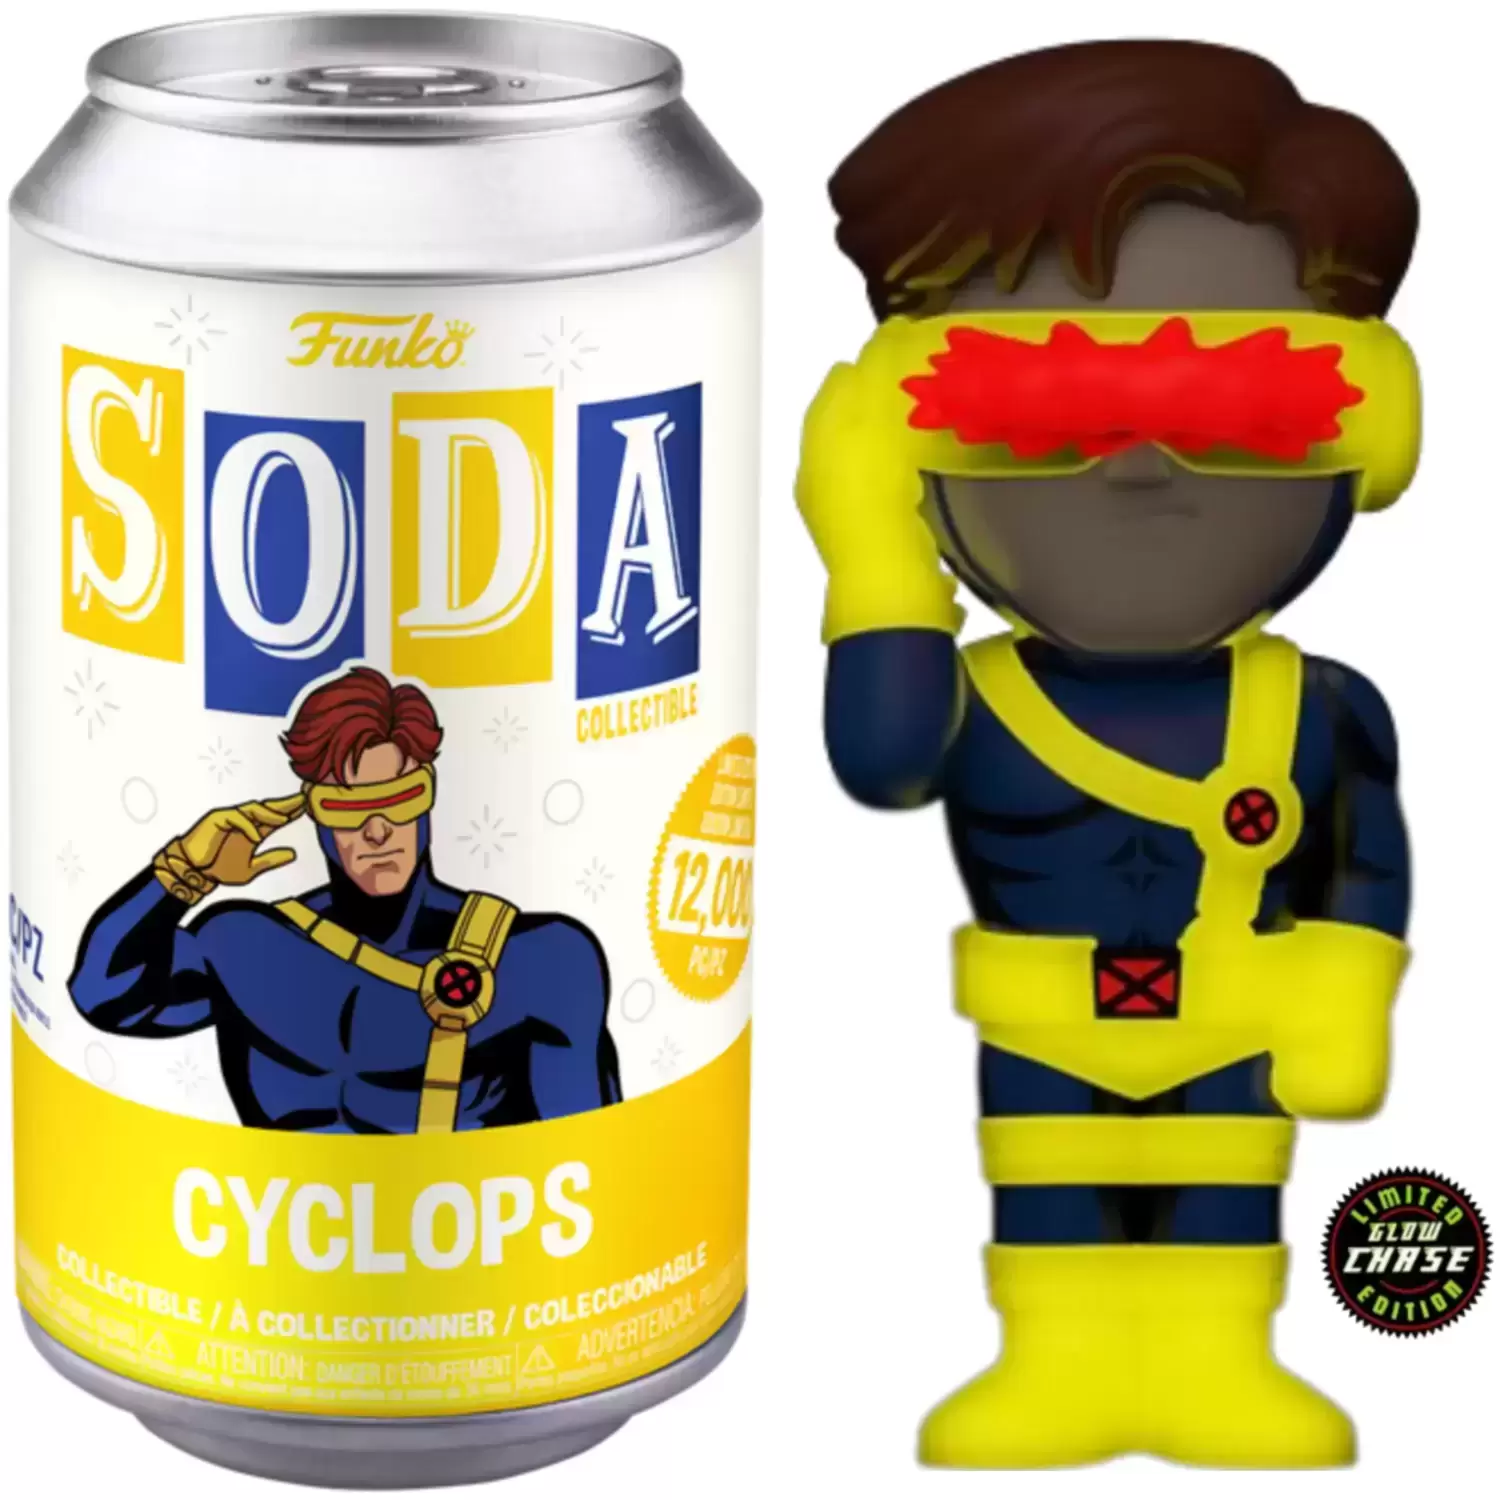 https://www.coleka.com/media/item/202309/14/vinyl-soda-copy-cyclops-001.webp